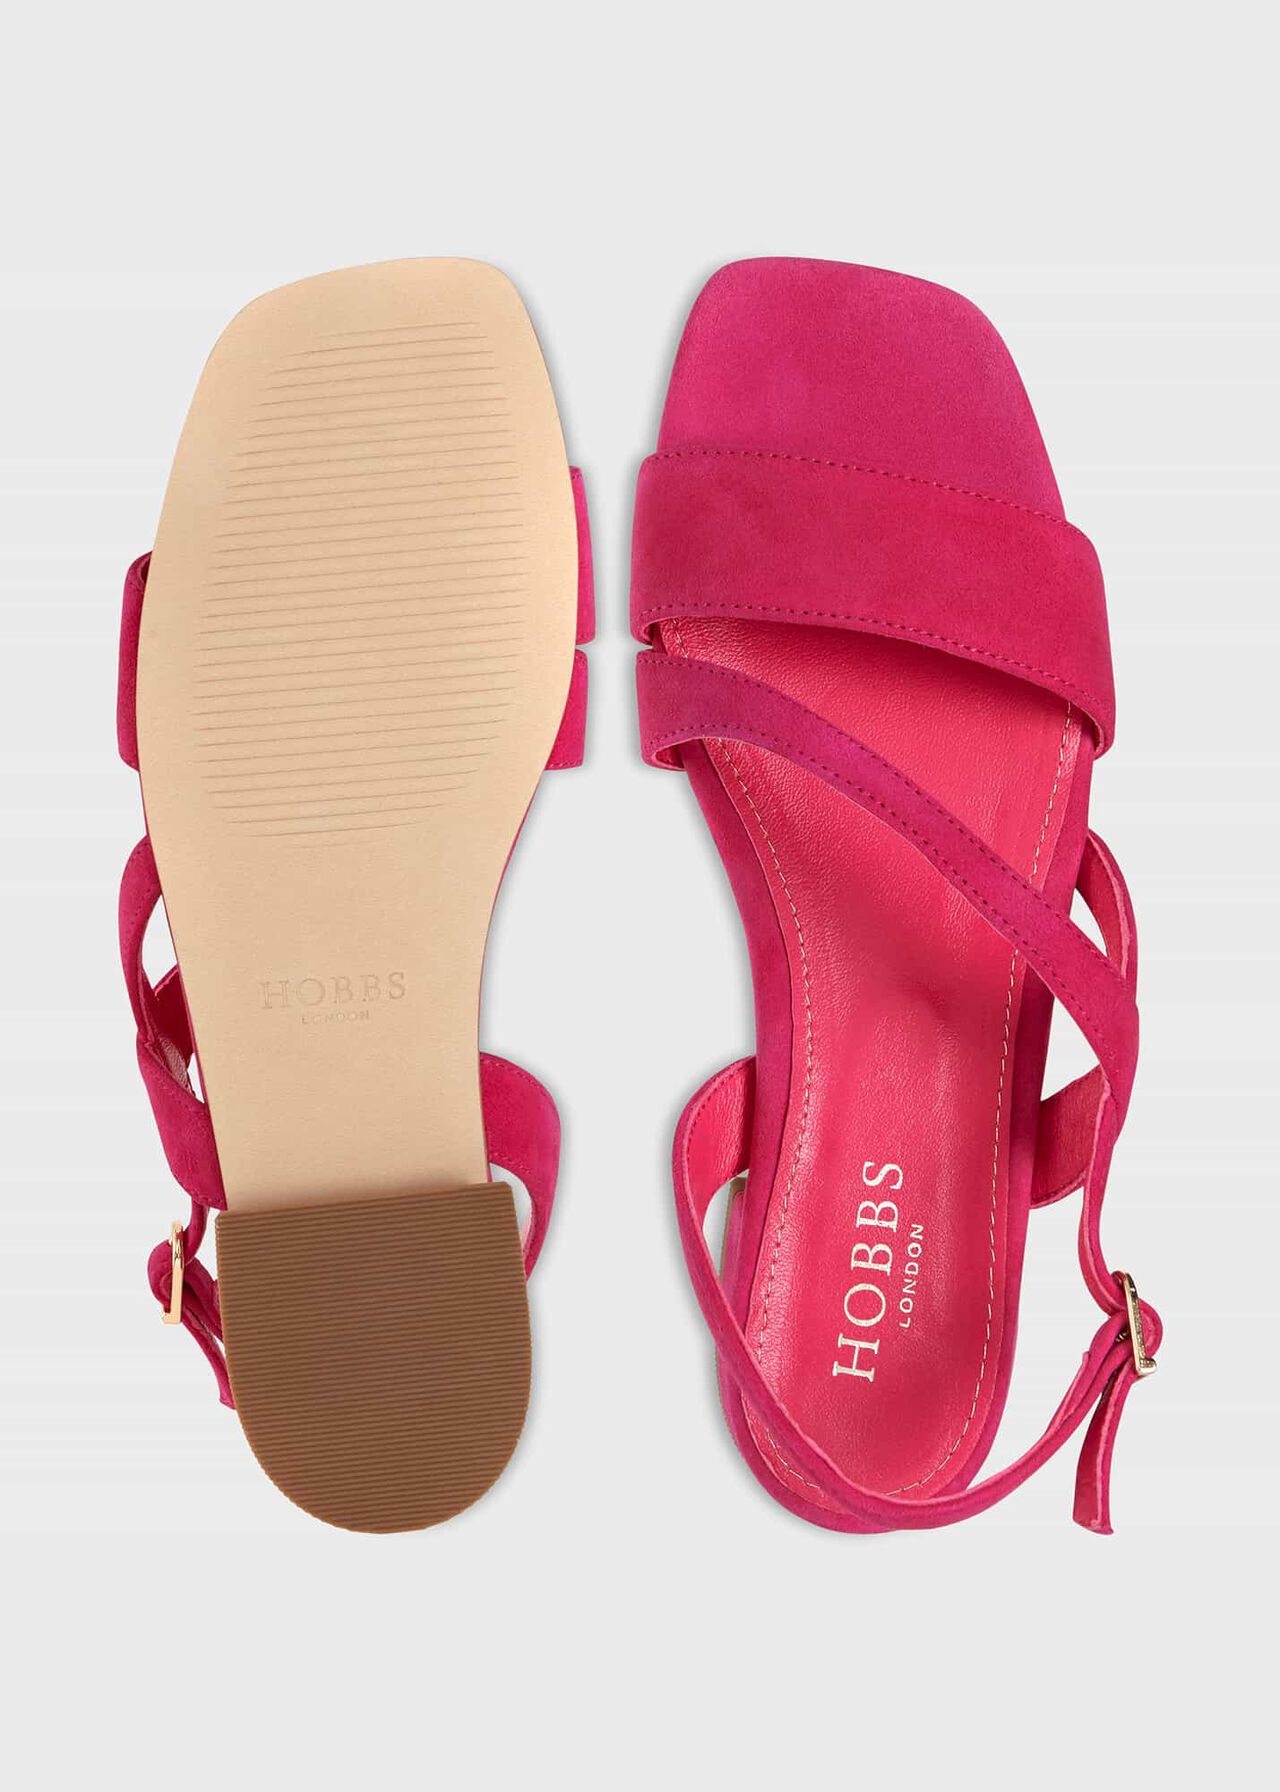 Mila Flats Sandal, Bright Pink, hi-res